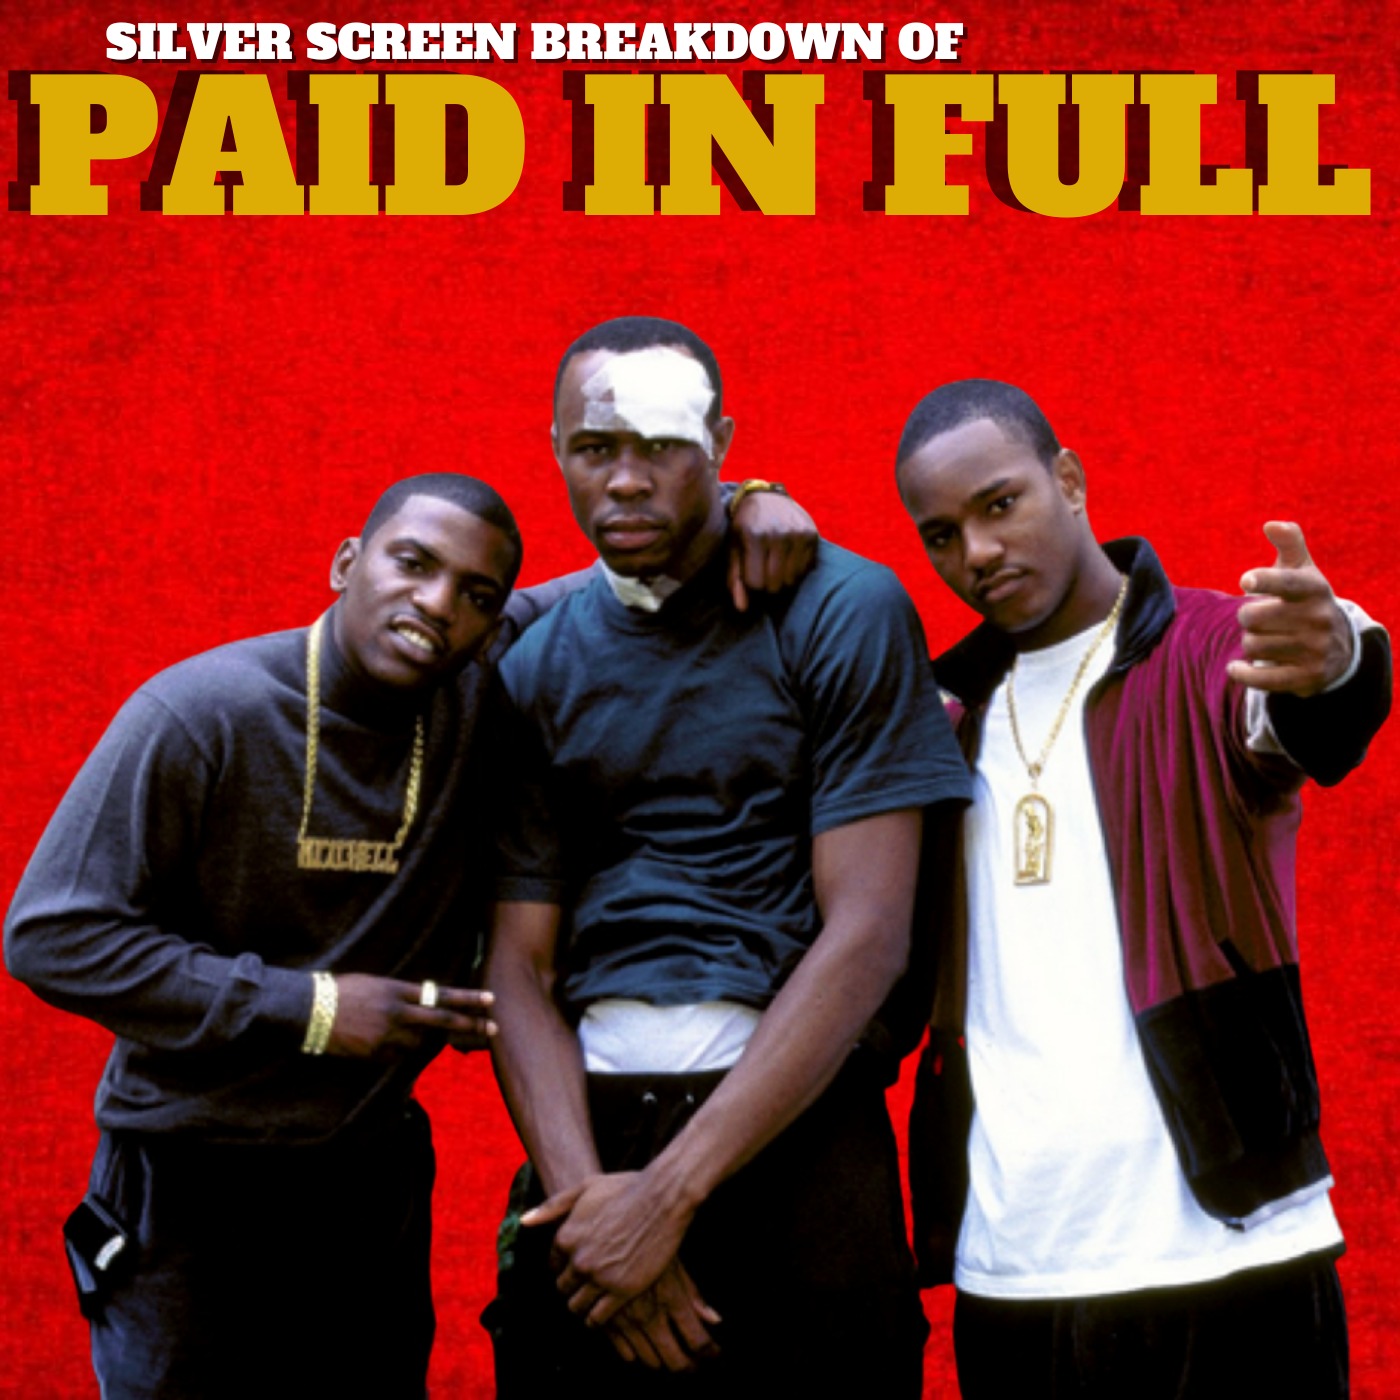 Paid In Full (2002) Breakdown Image